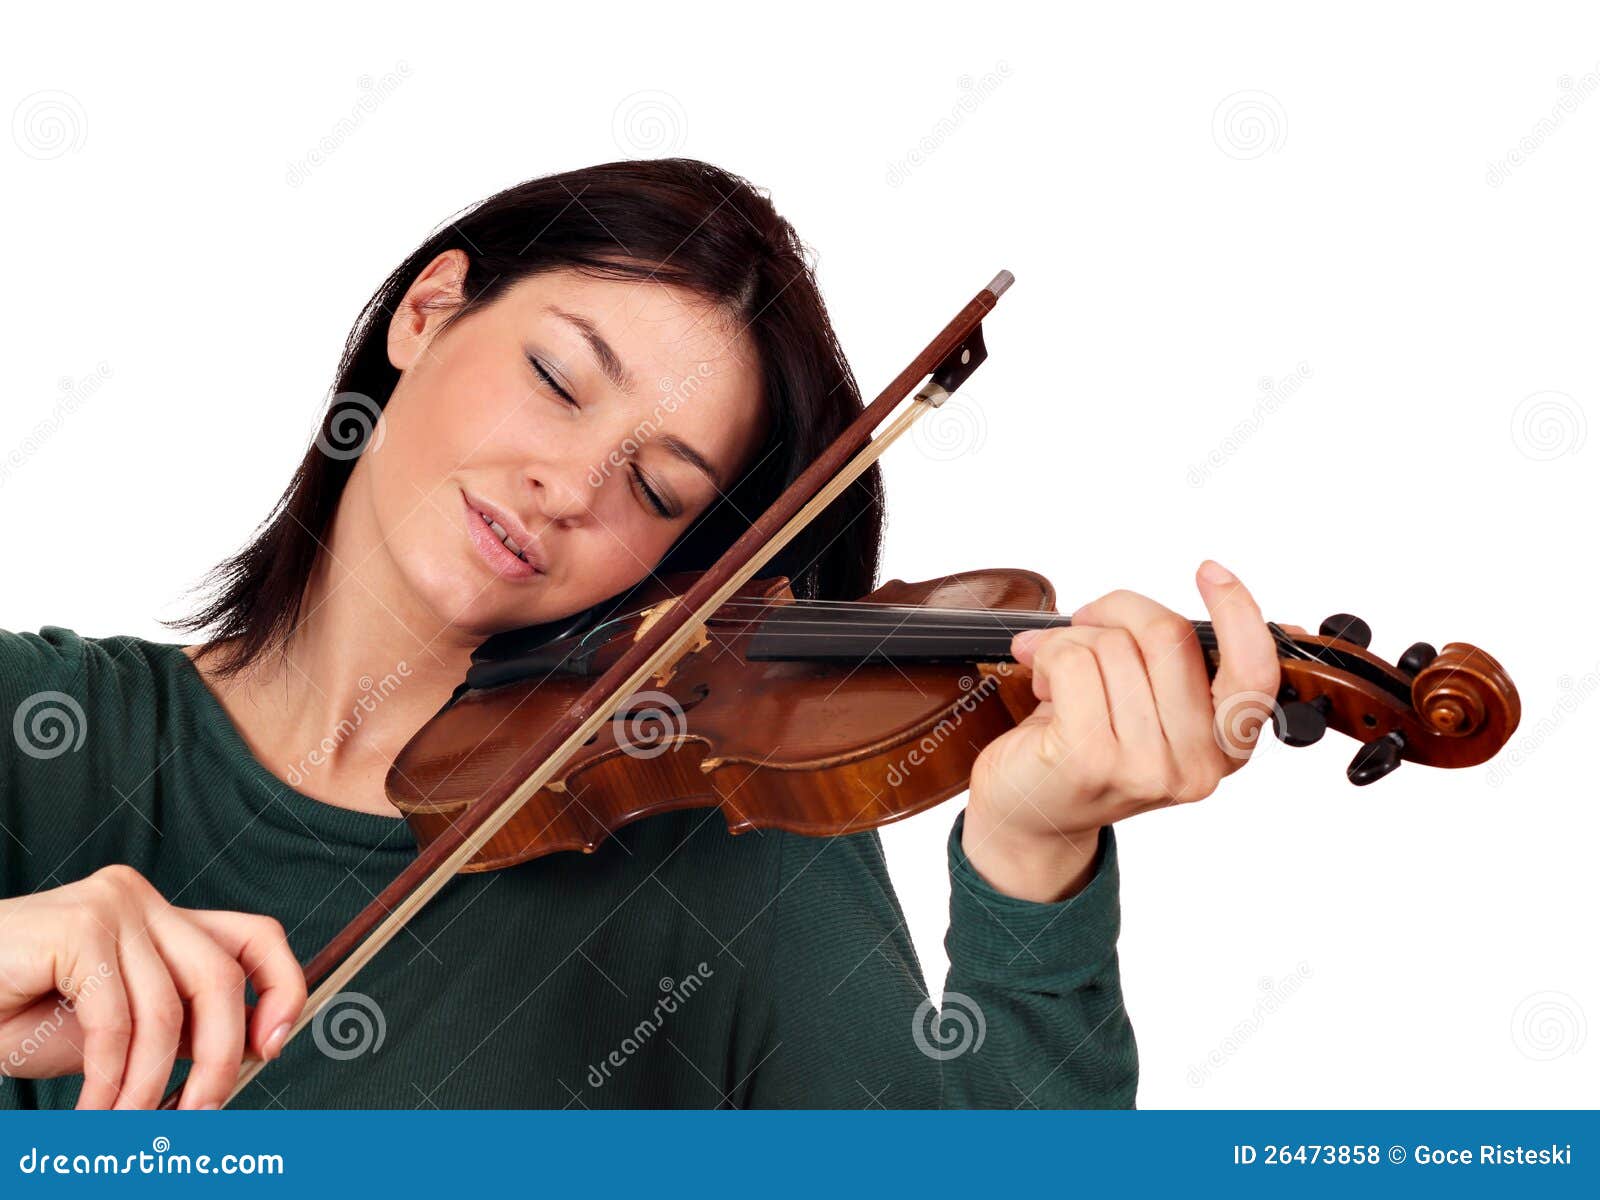 Ты хорошо играешь на скрипке поставить. Девушка, которая играет на скрипке stock. Фотосессия со скрипкой в студии. Фотографии скрипки. Скрипачи женщины Франции.